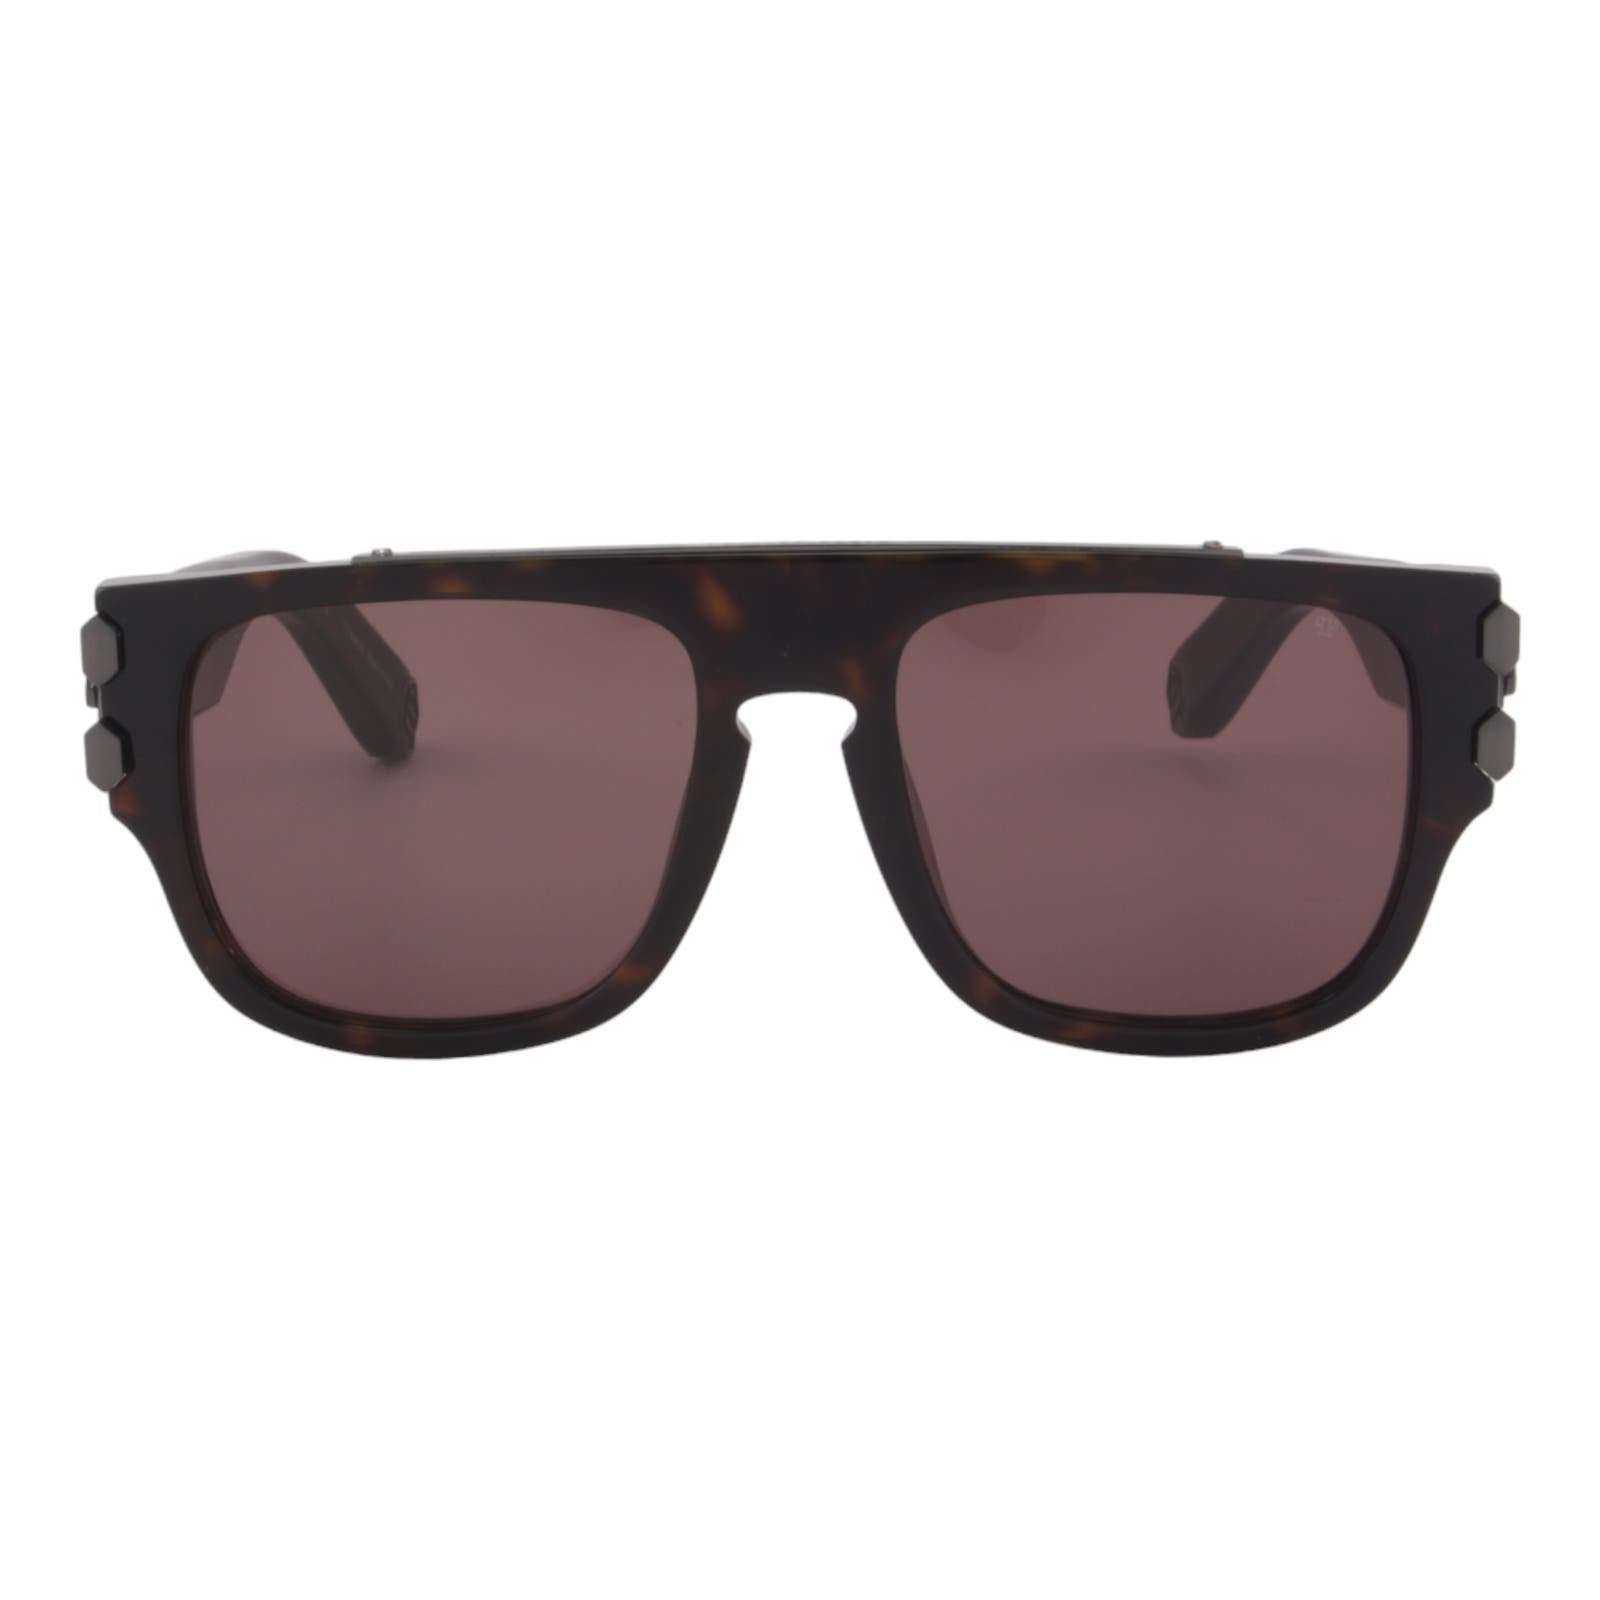 Men Titanium Square Sunglasses SPP011M-0722 Havana Brown & Gunmetal